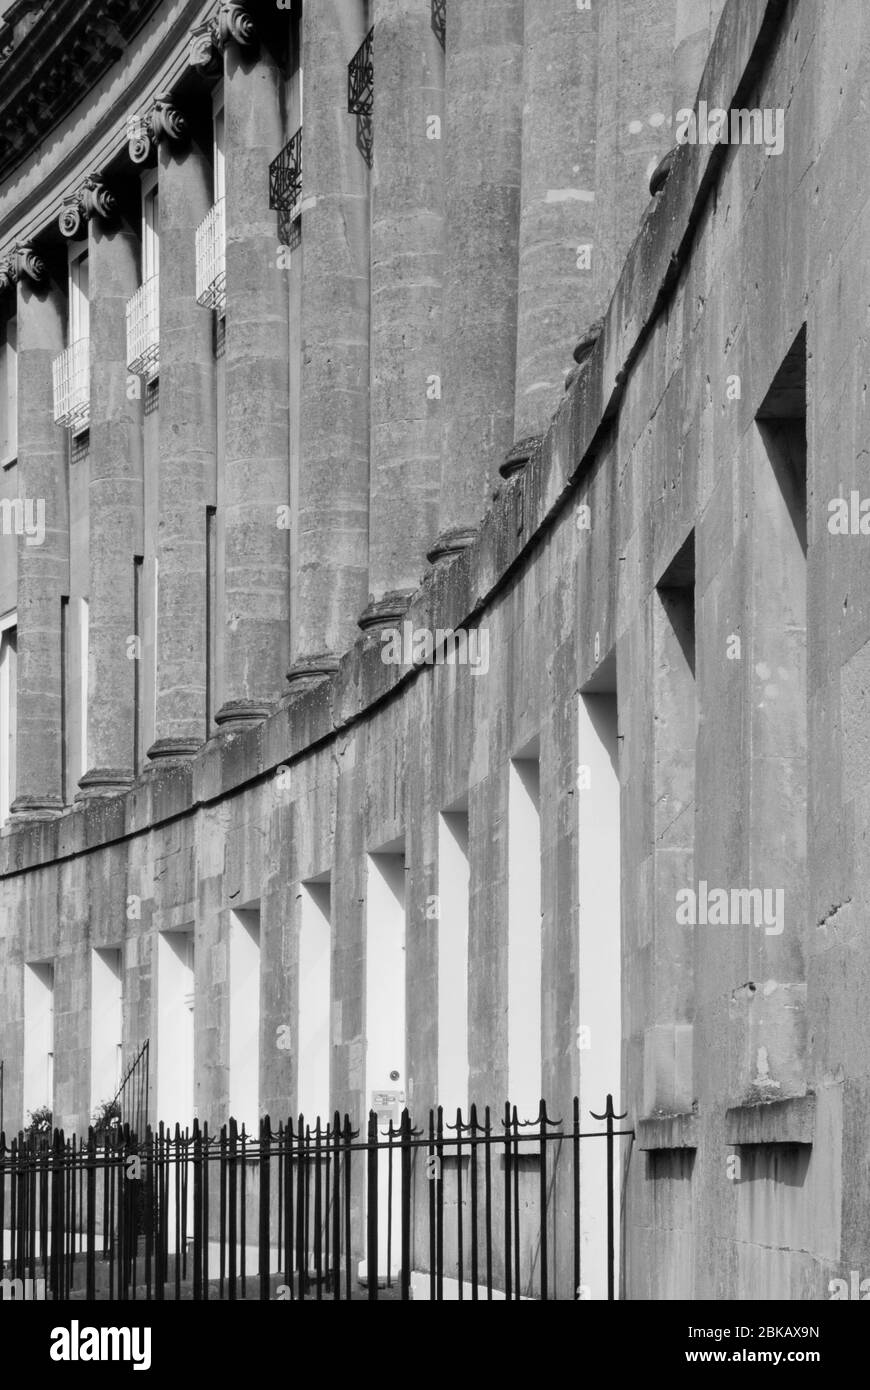 Badstein Reihenhäuser Georgische Architektur Terrassen The Royal Crescent, Bath, BA1 2LS Vereinigtes Königreich John Wood das jüngere Weltkulturerbe Stockfoto